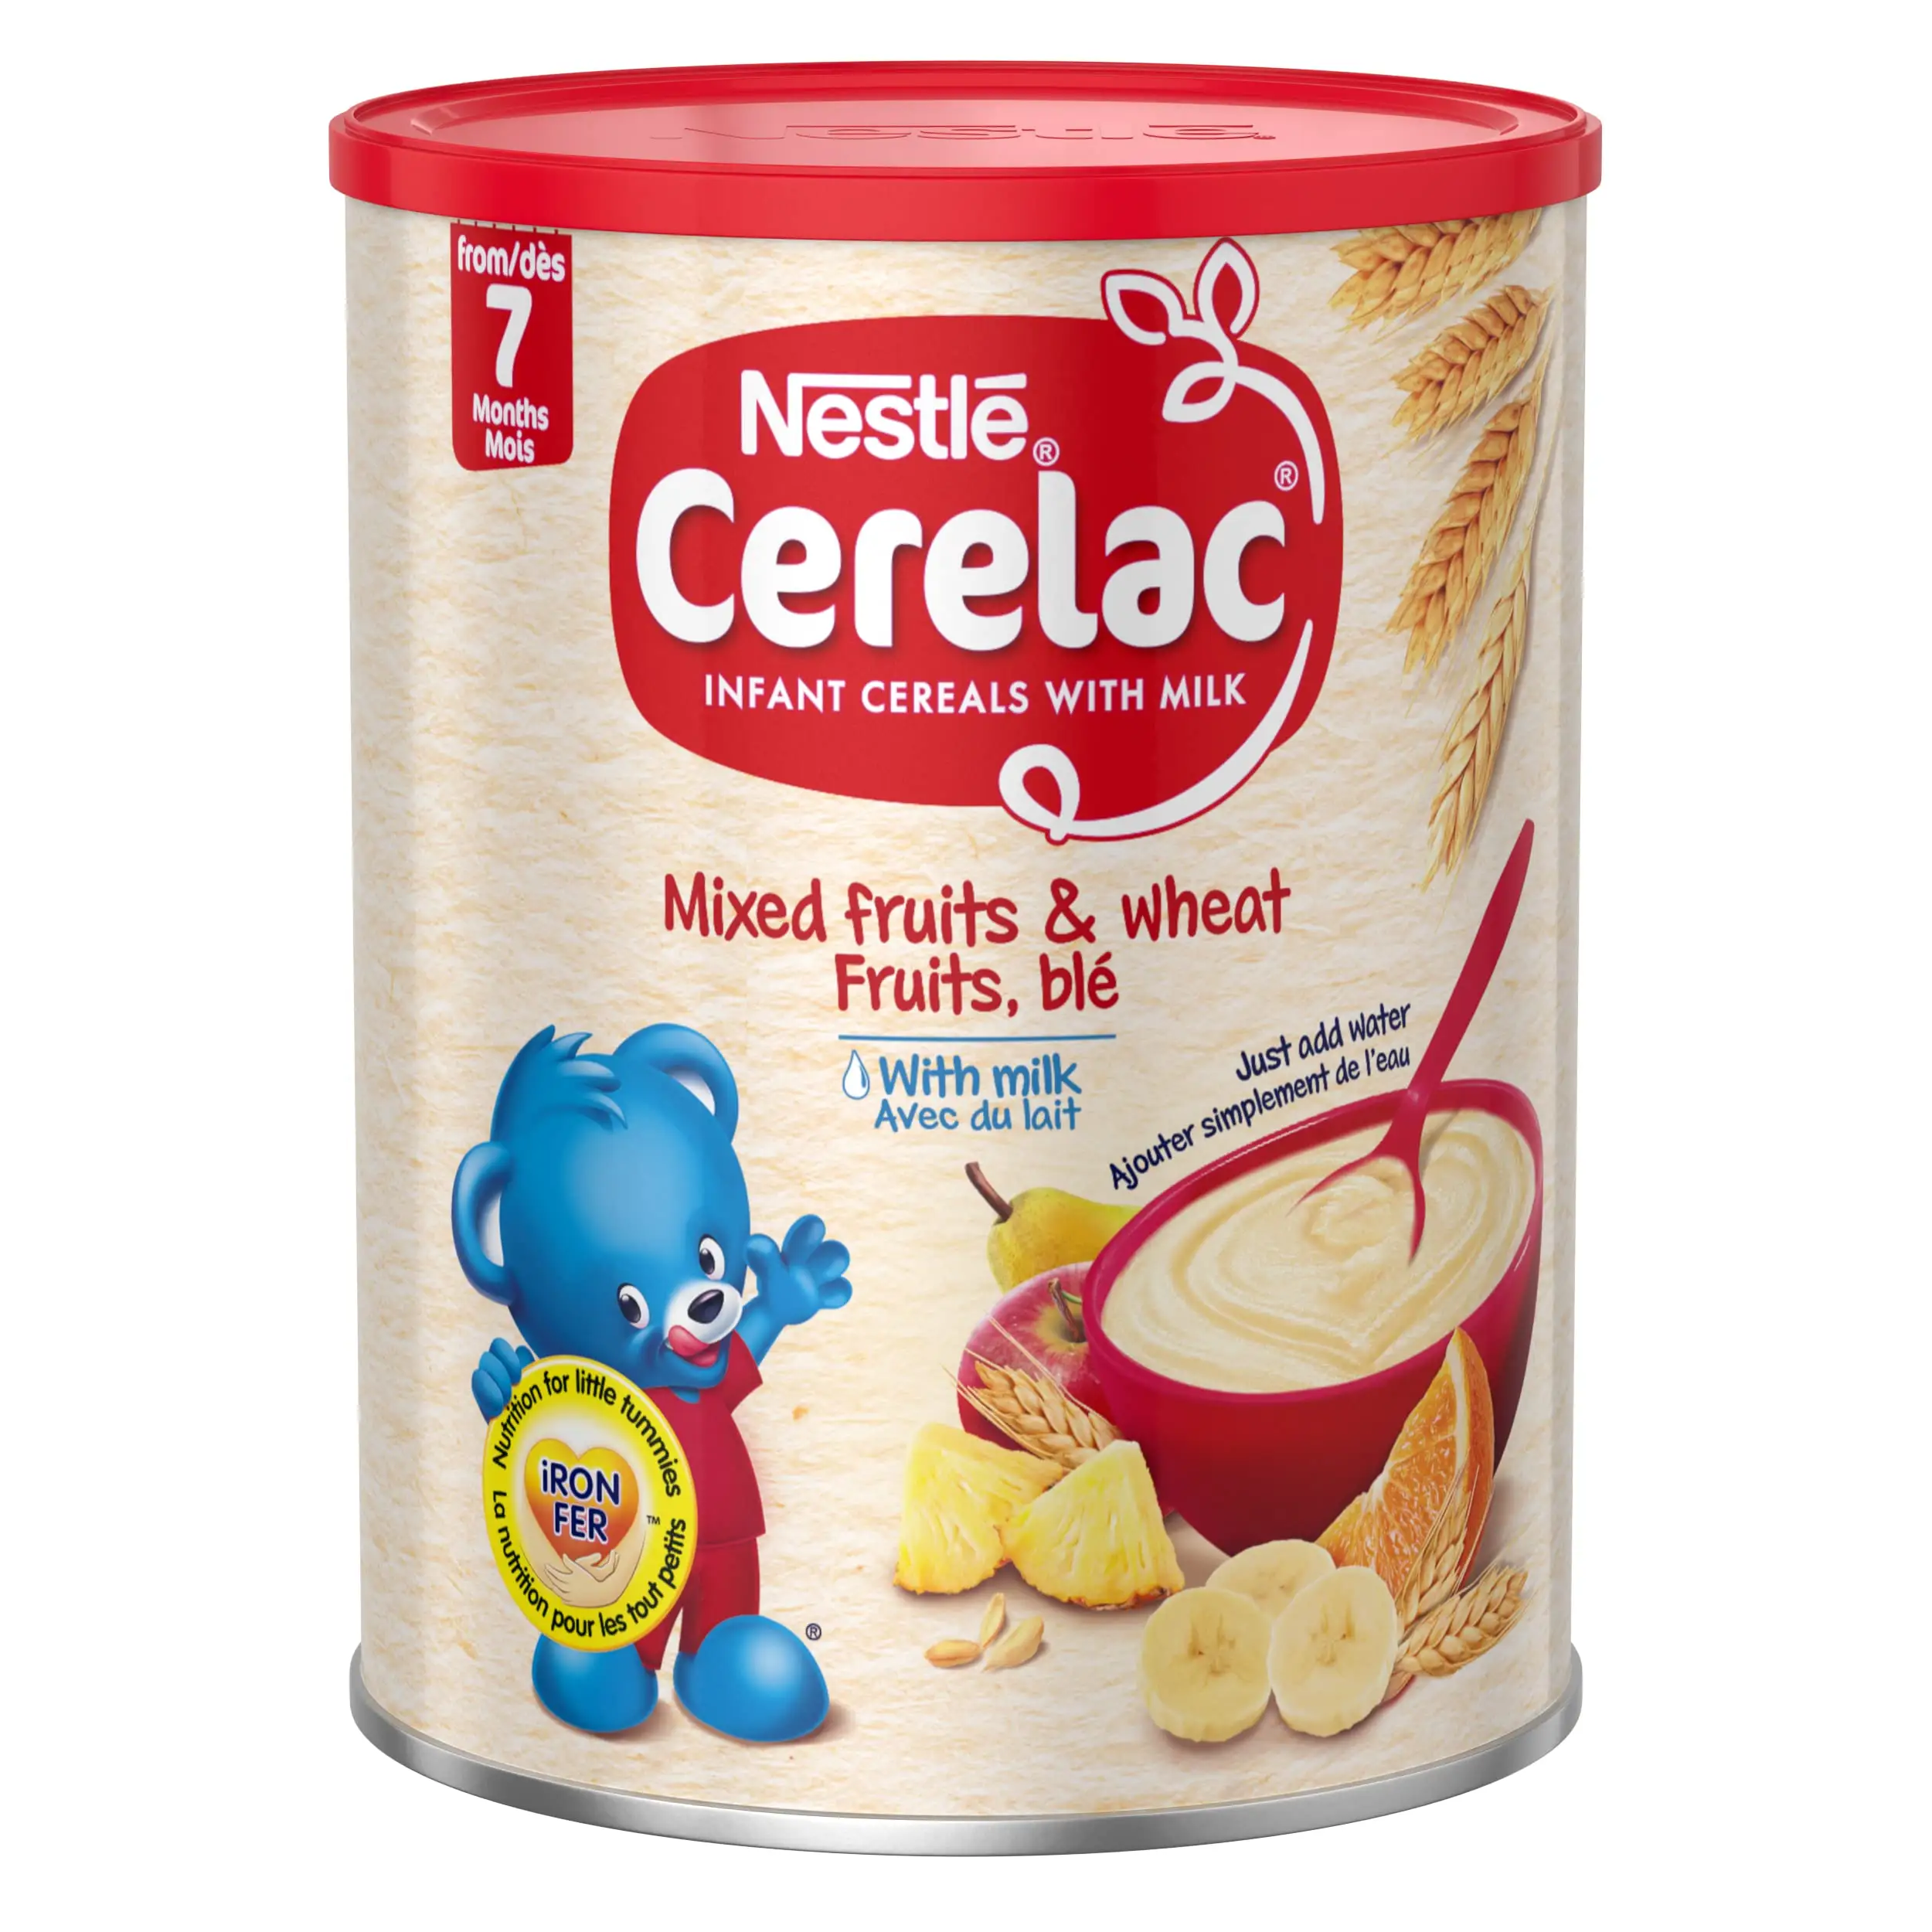 เนสท์เล่ Cerelac น้ำผึ้งและข้าวสาลีข้าวเด็กผสมผลไม้ทารกธัญพืชกับนม